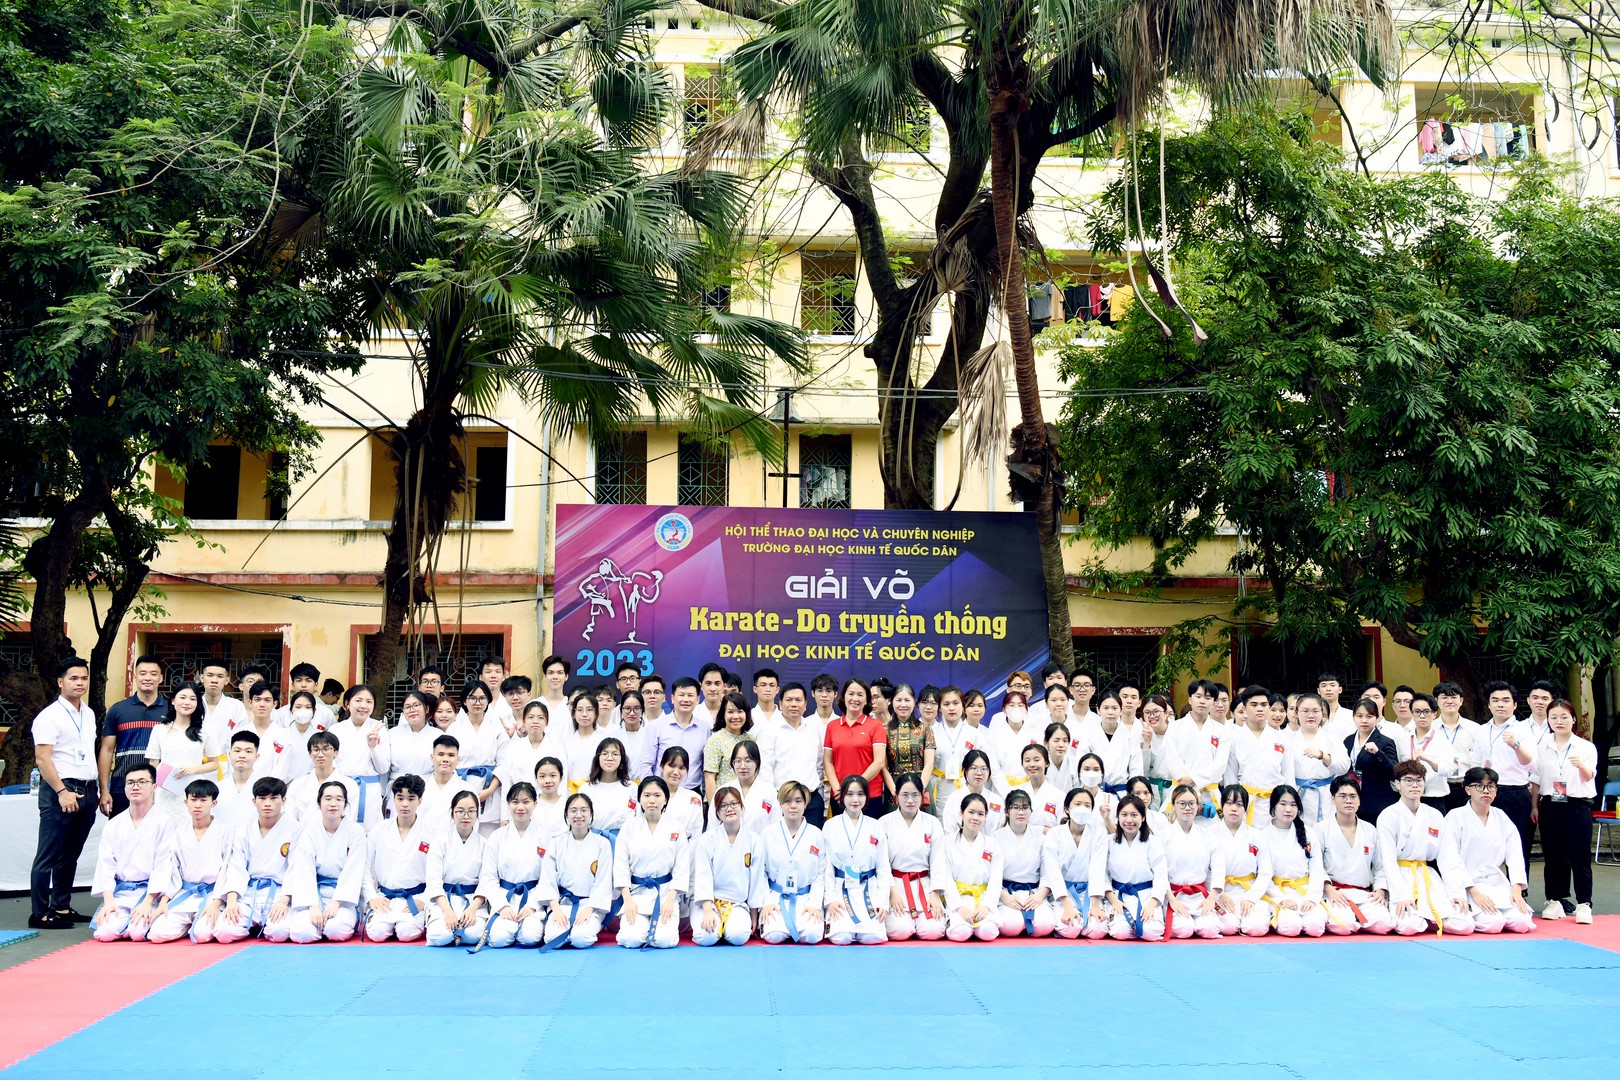 Trường Đại học Kinh tế Quốc dân khai mạc Giải võ Karate-do truyền thống năm 2023